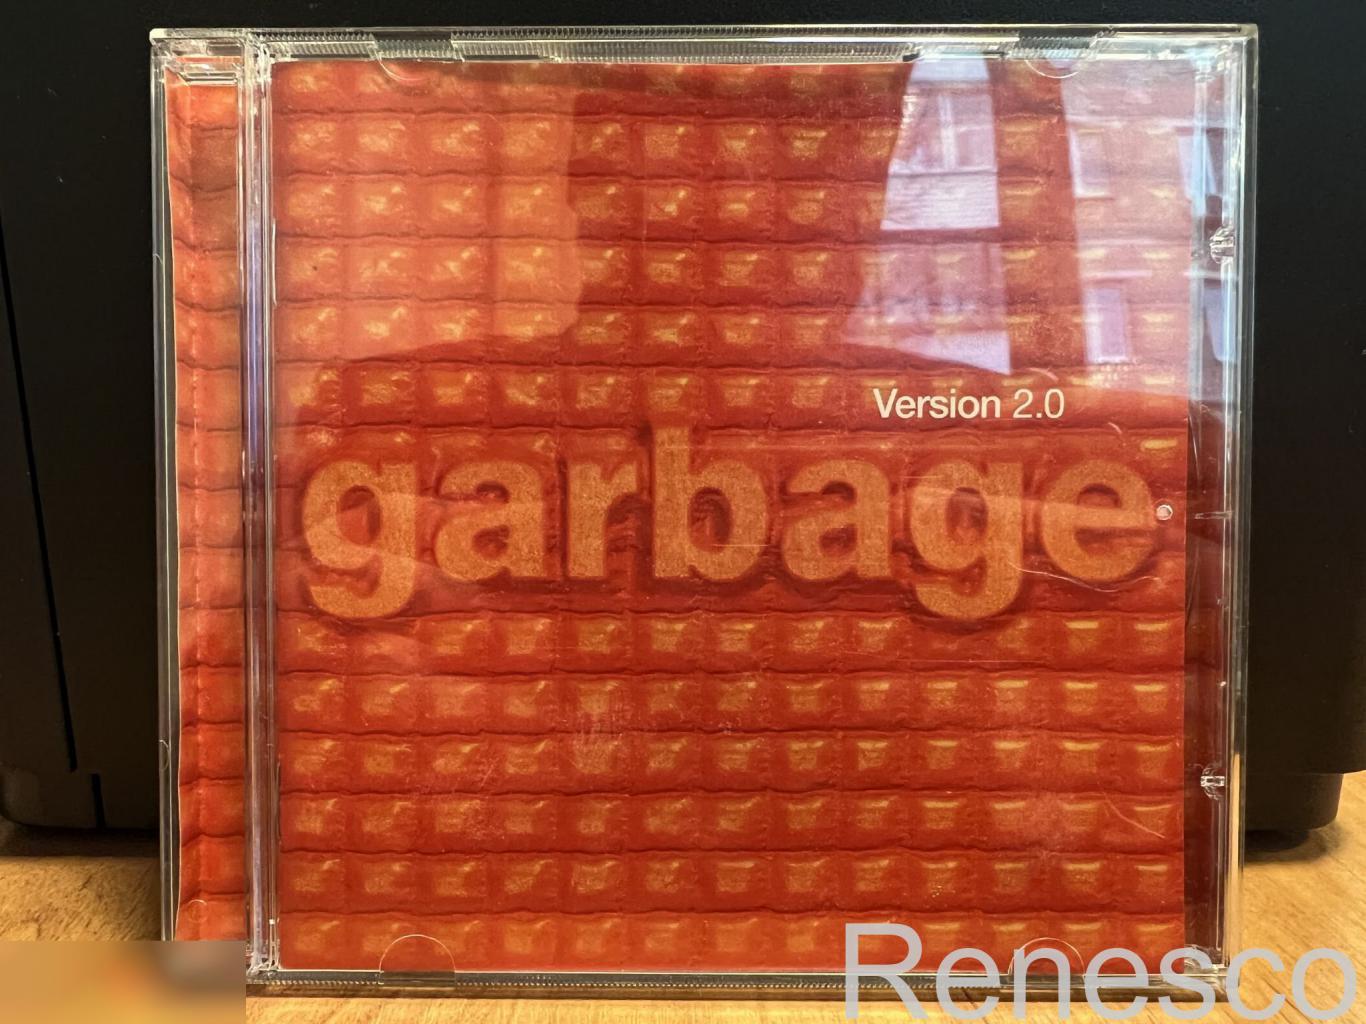 Garbage – Version 2.0 (UK) (1998)